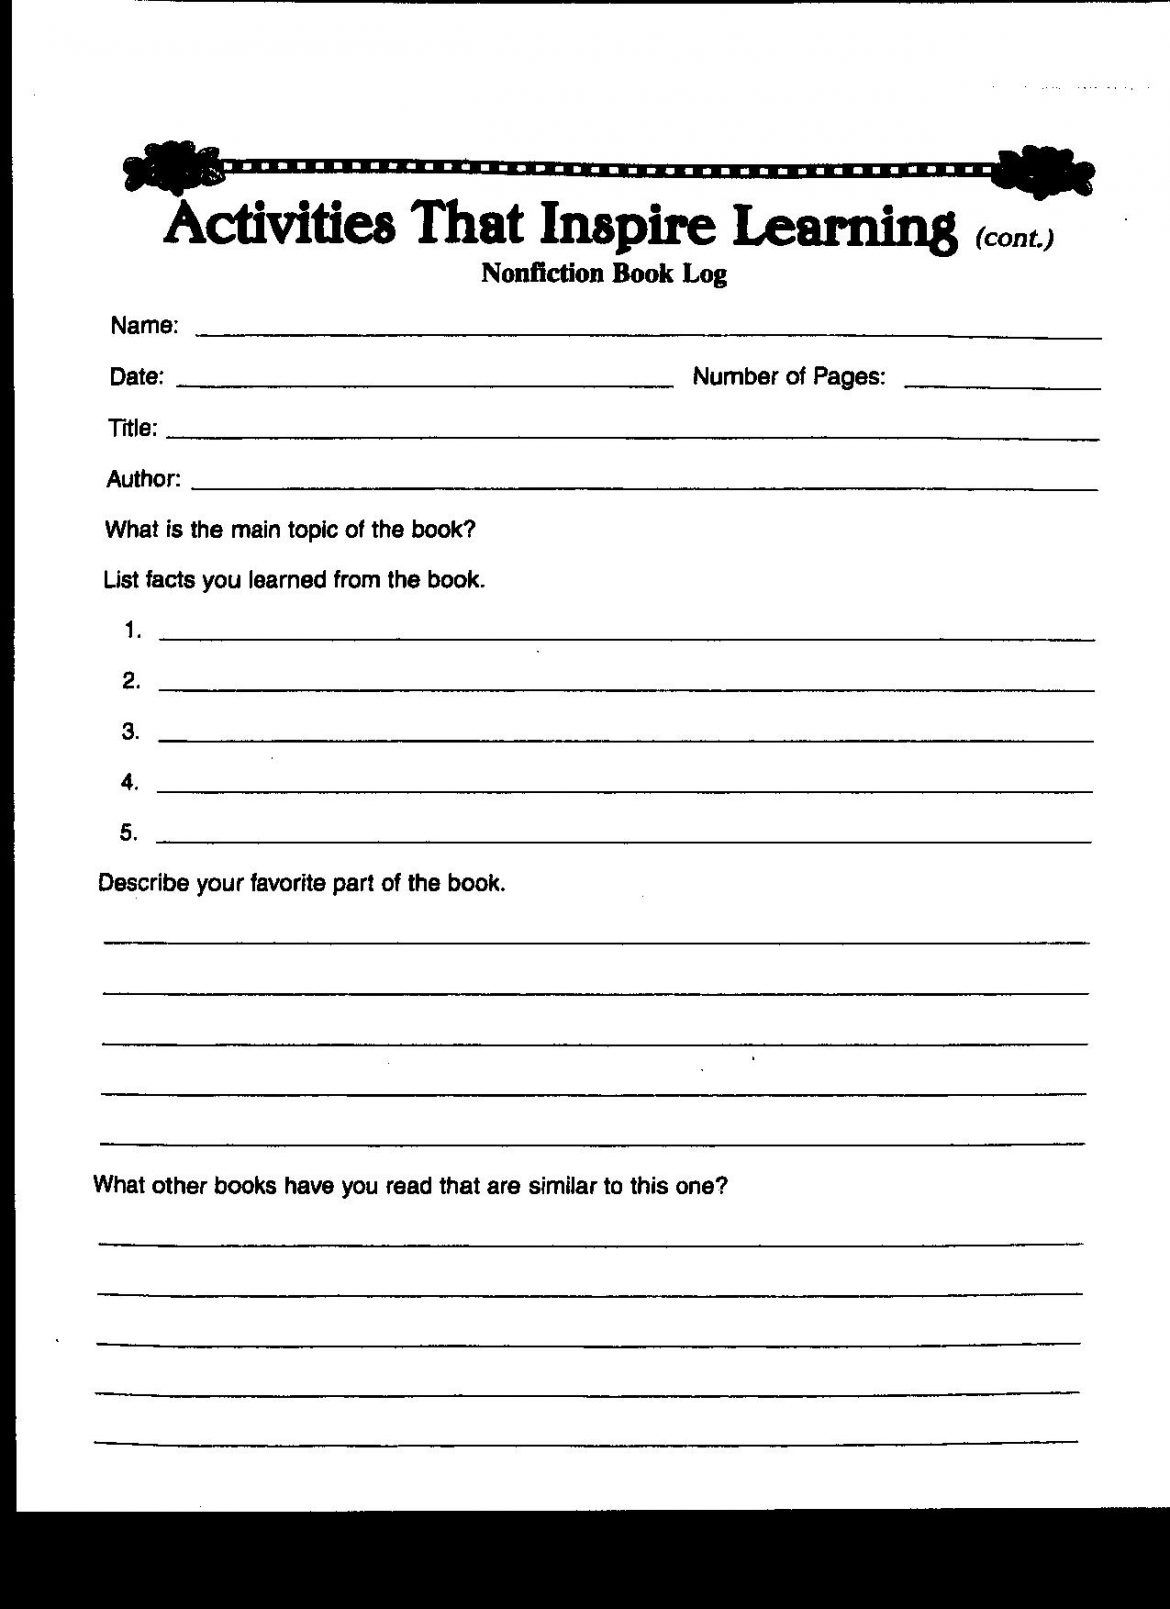 Book Report Template 7th Grade